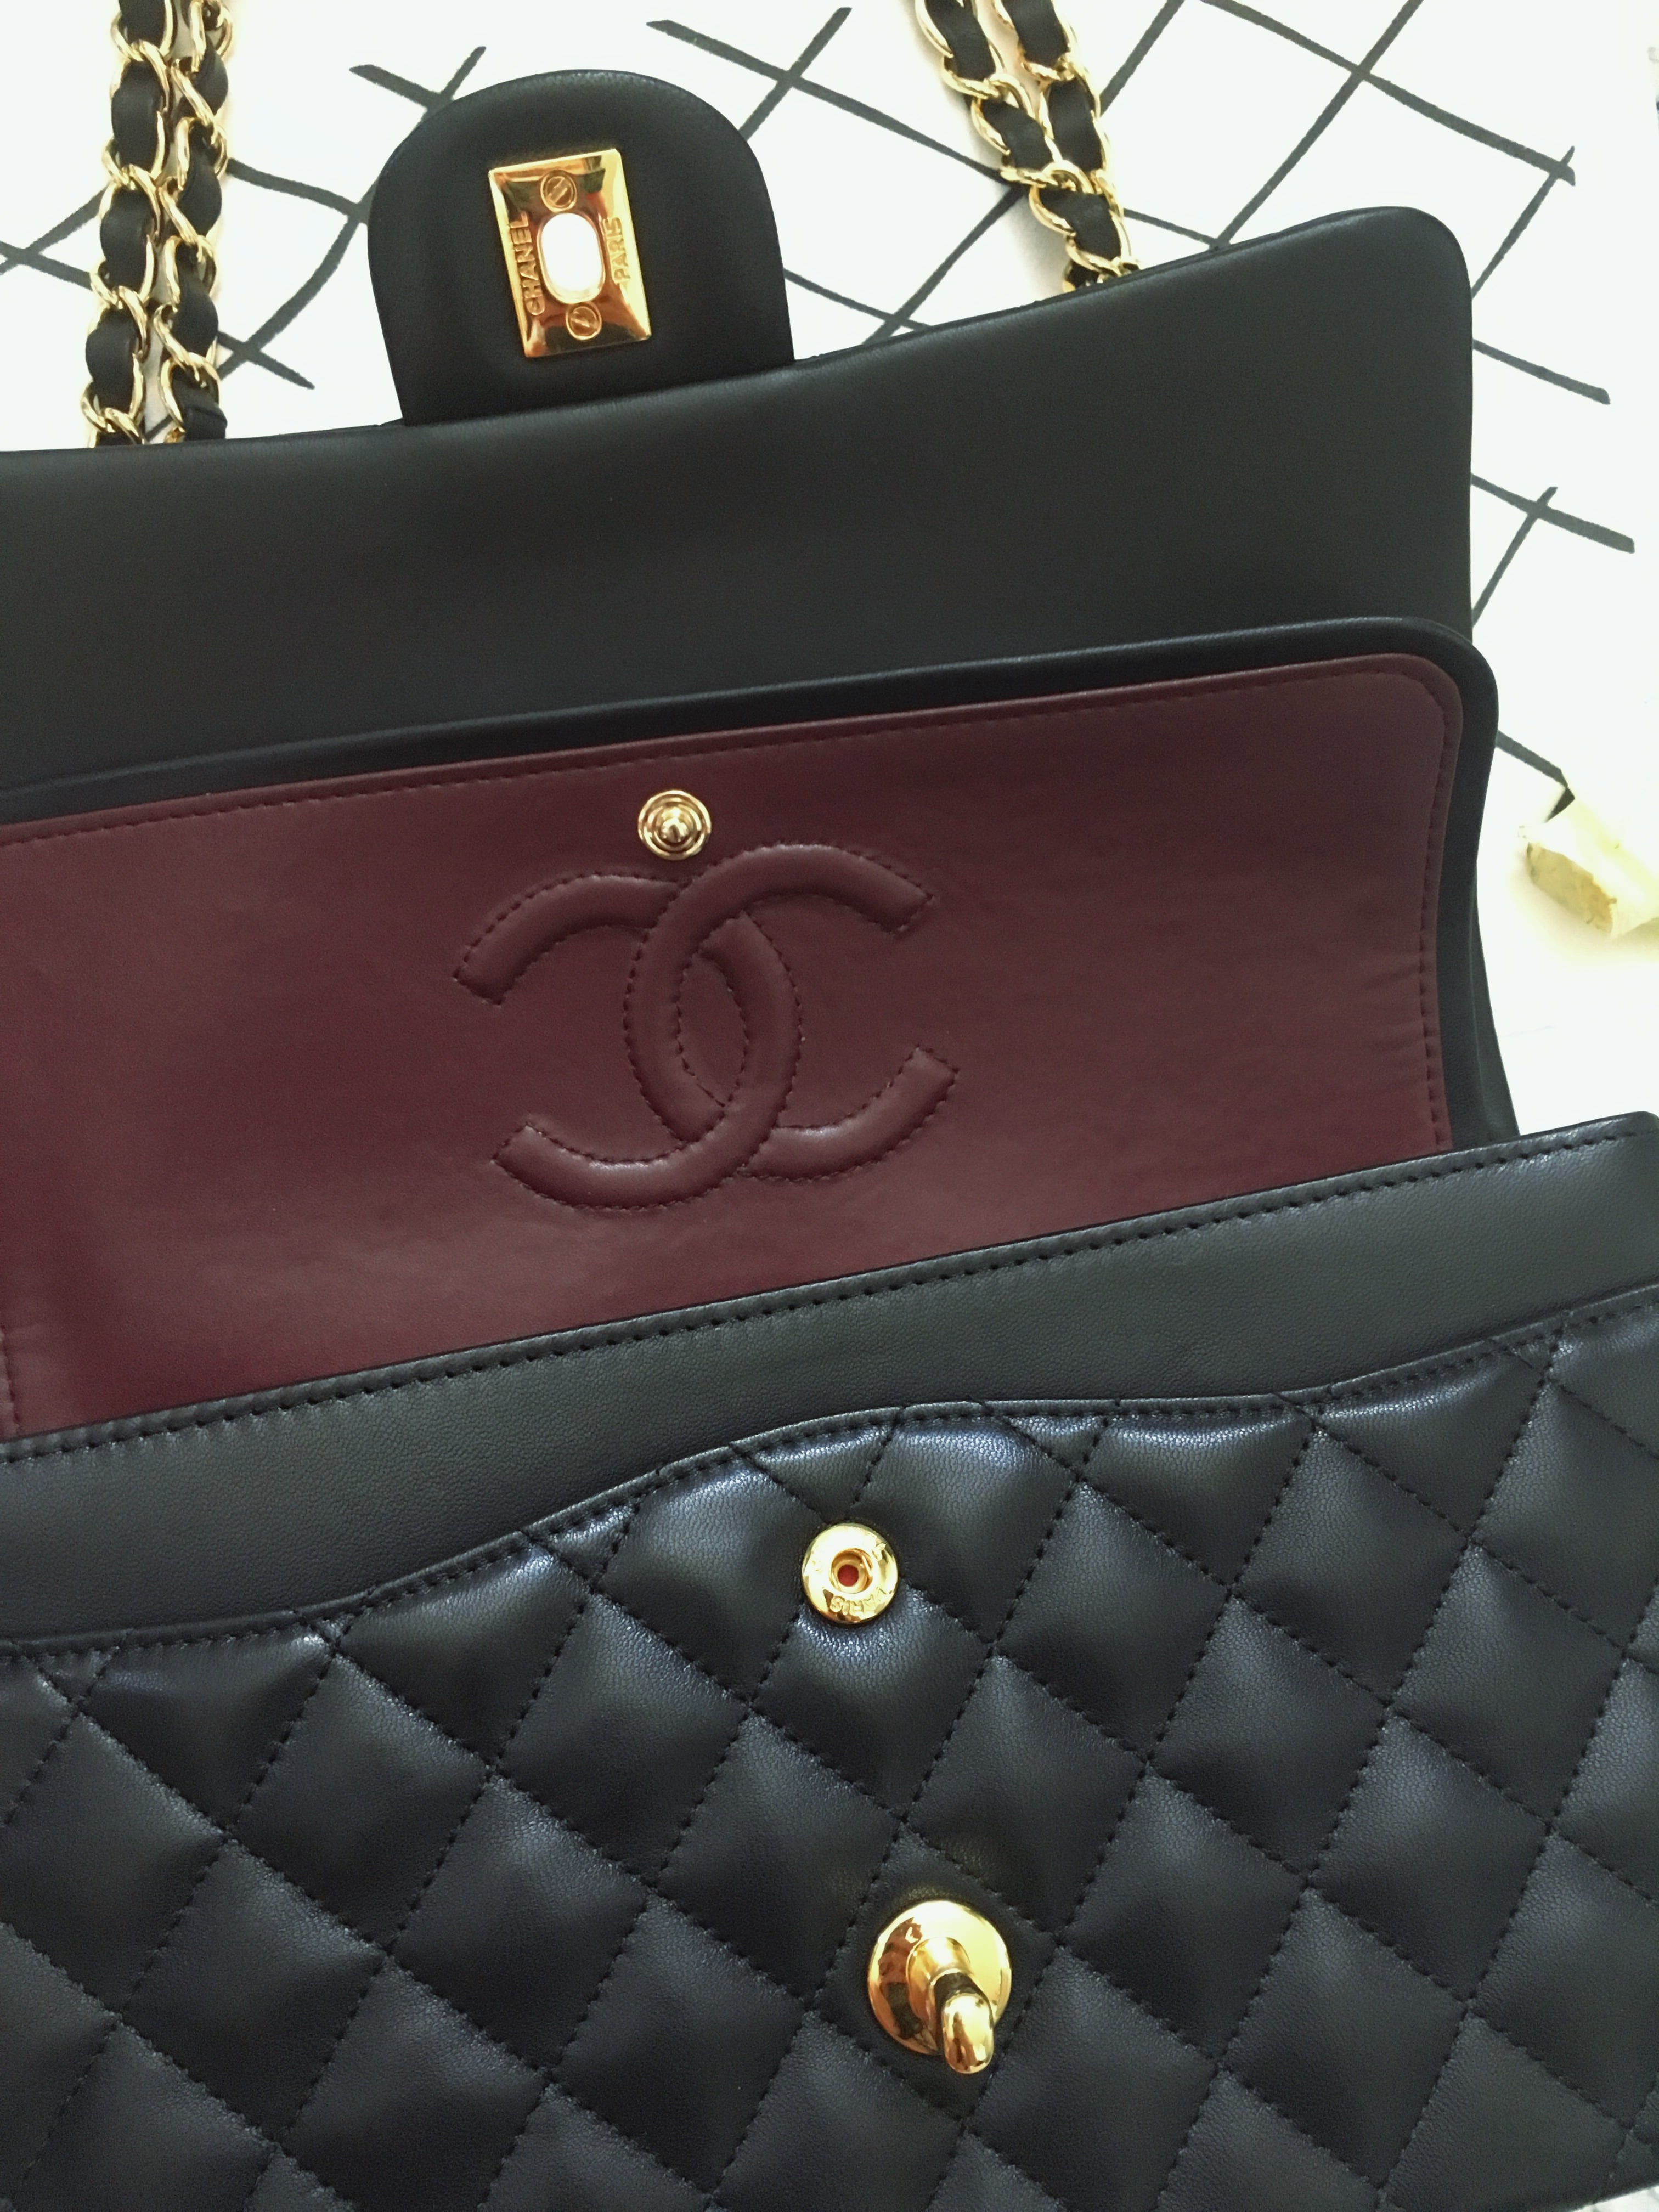 Die 2.55 Tasche von Chanel ist ein waschechtes IT Piece. Die kultige Tasche hat eine schöne Geschichte, die ich im Blogpost erzähle und top Pflegetipps gebe